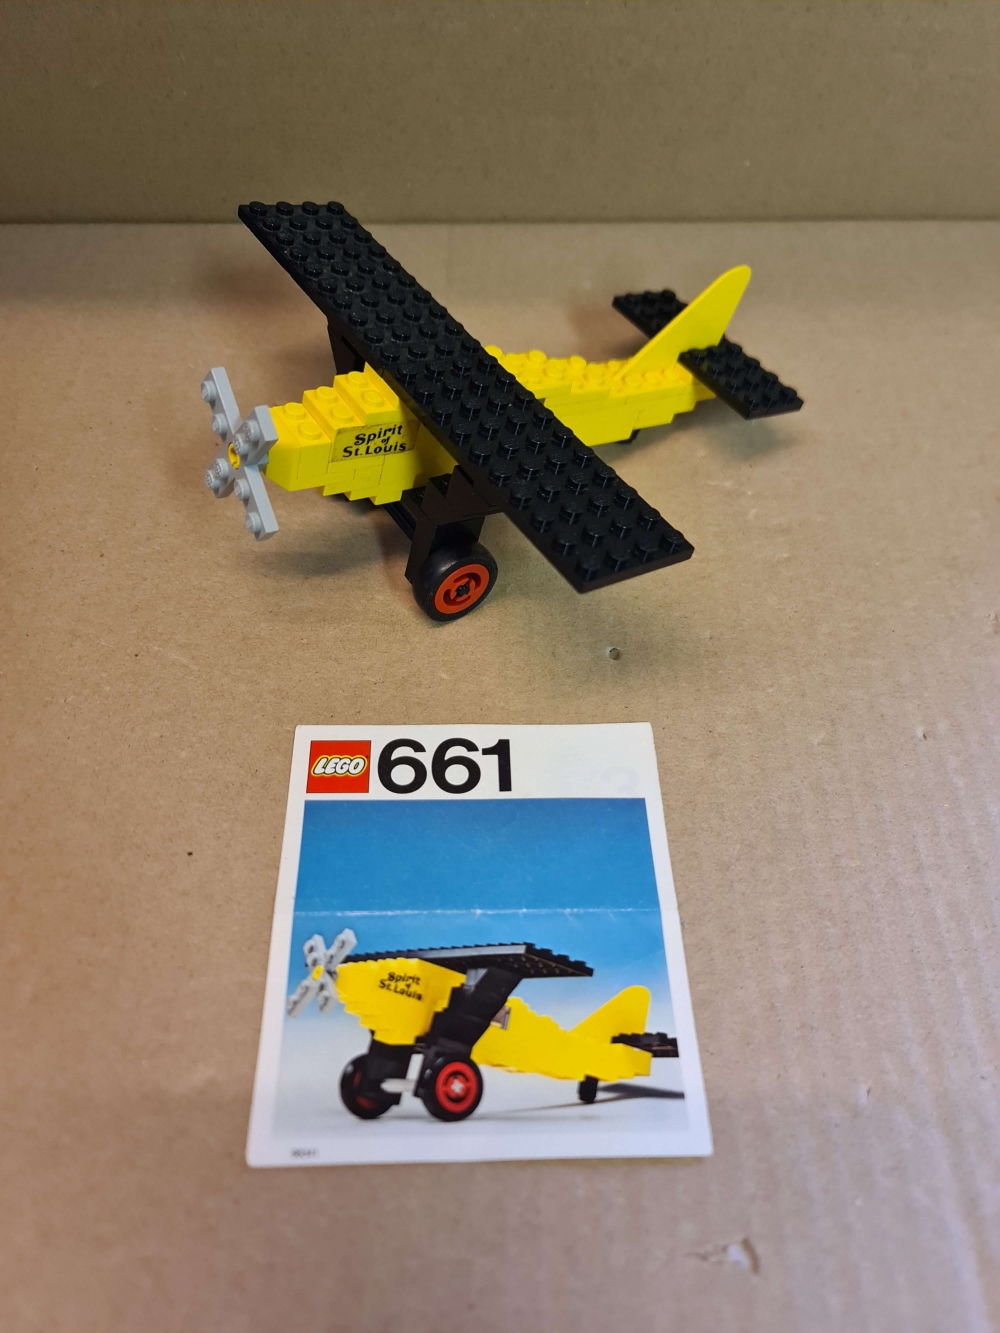 Sett 661 fra Lego Legoland serien.
Pent sett. Originale brikker.
Komplett med manual.